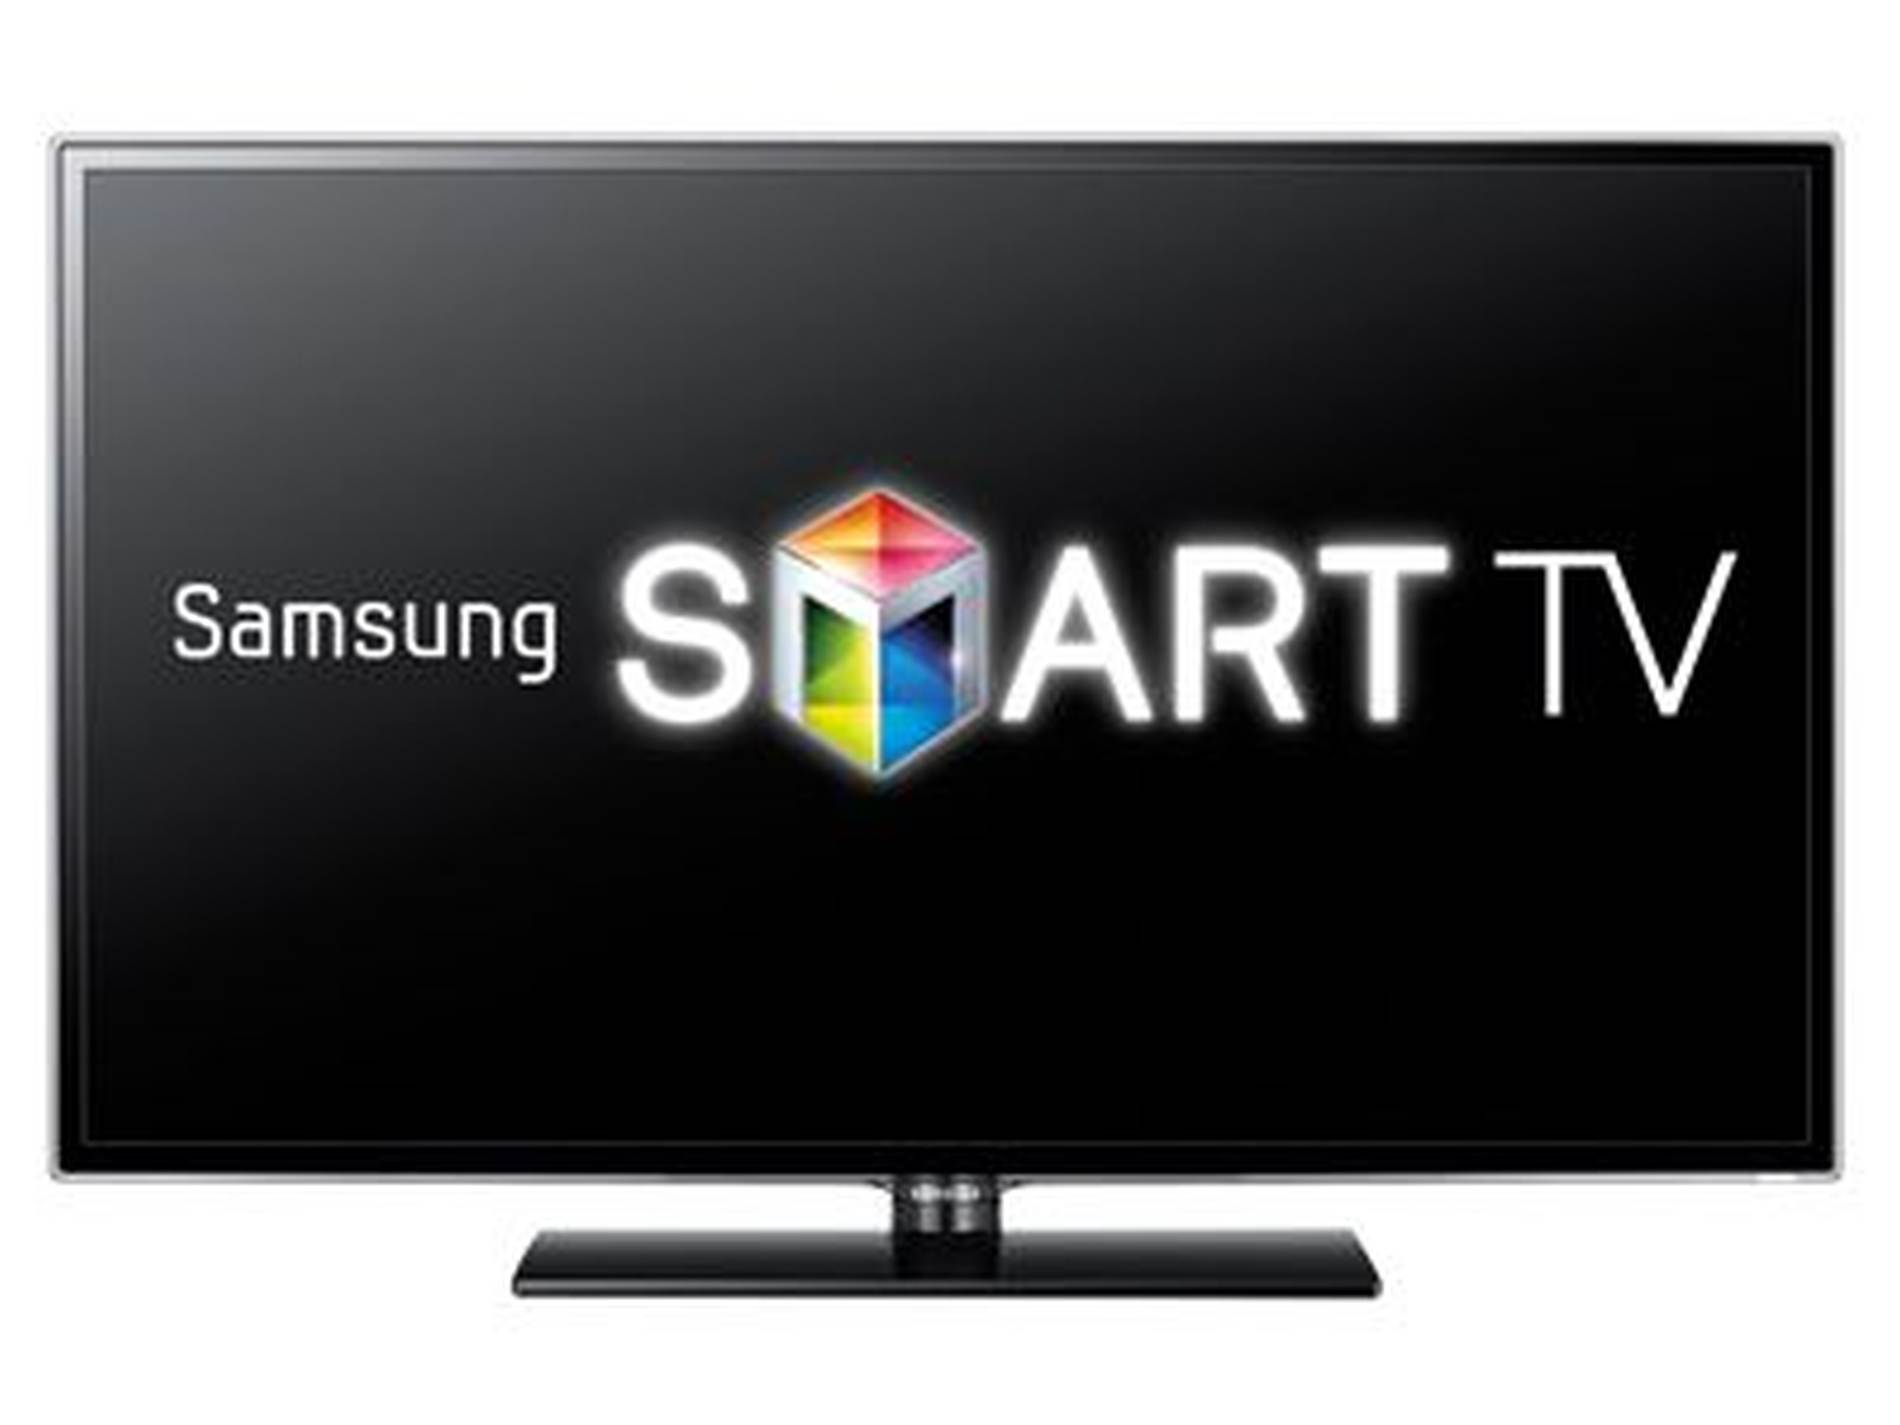 Значки на телевизоре самсунг. Samsung Smart TV. Смарт телевизор. Smart TV телевизор. Телевизор самсунг смарт.